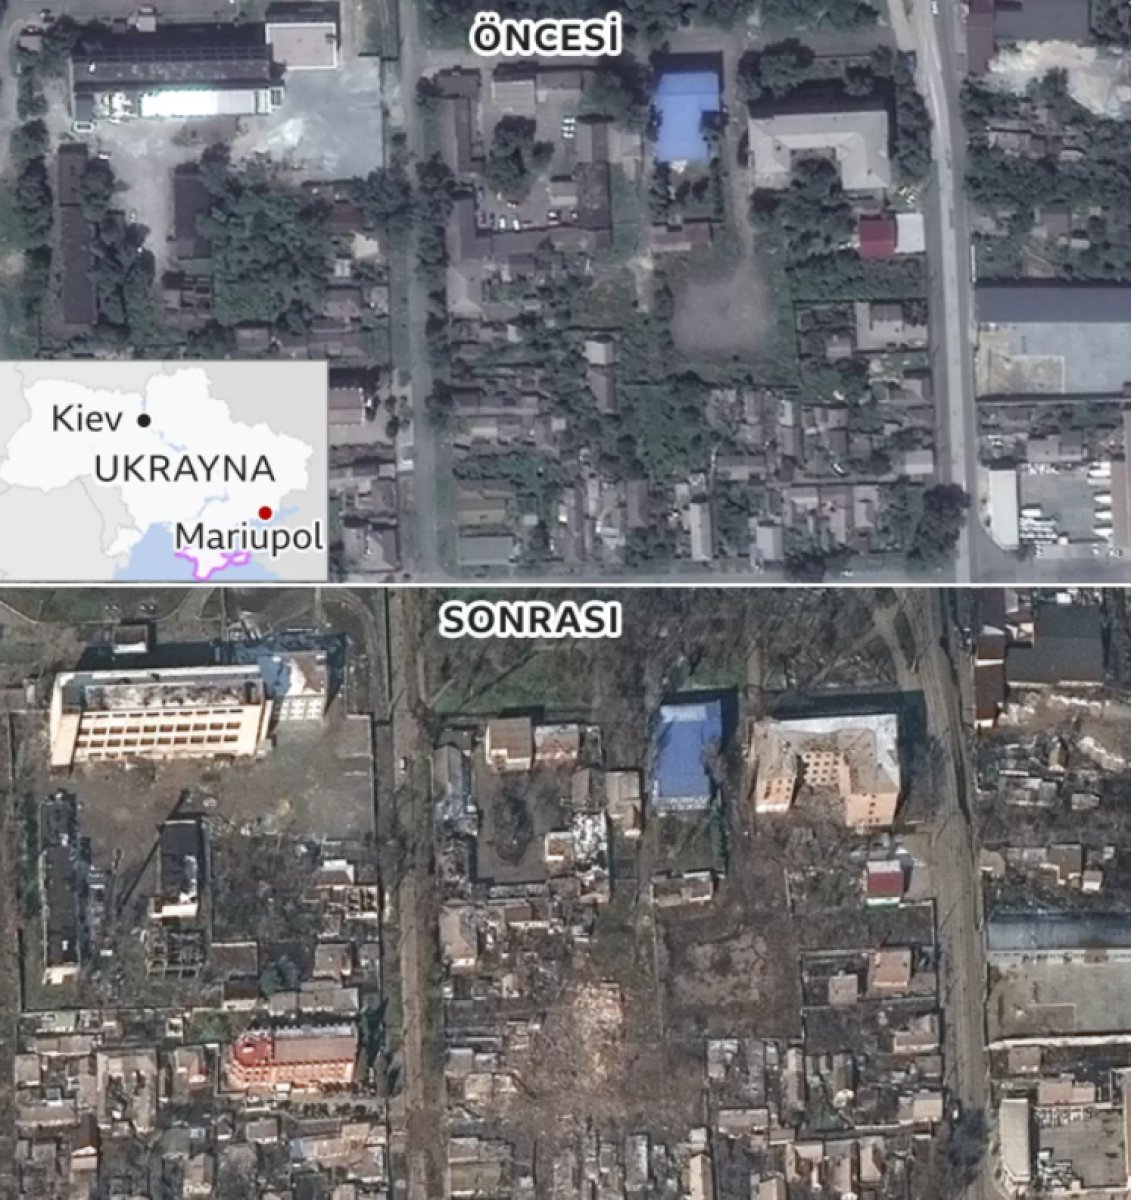 Mariupol de yıkımın boyutuna ait kareler #2